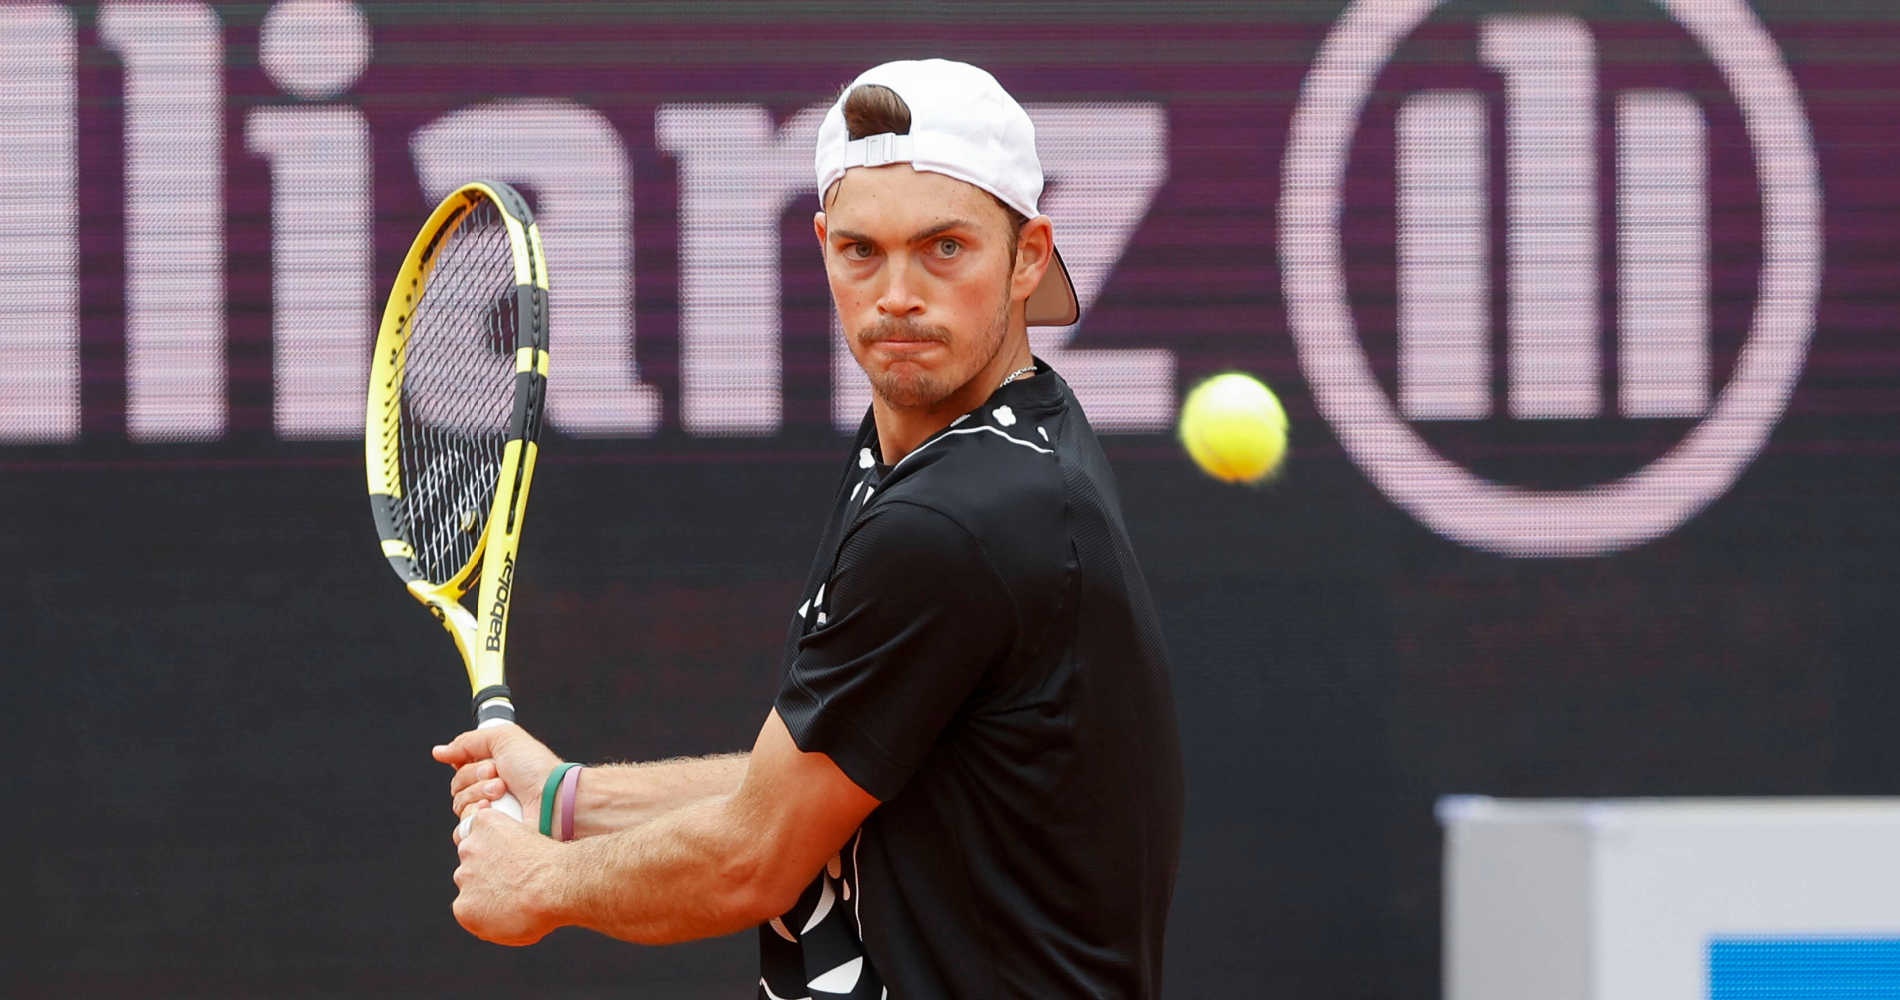 Tennis, ATP – Antwerp 2023: Marterer defeats Borges